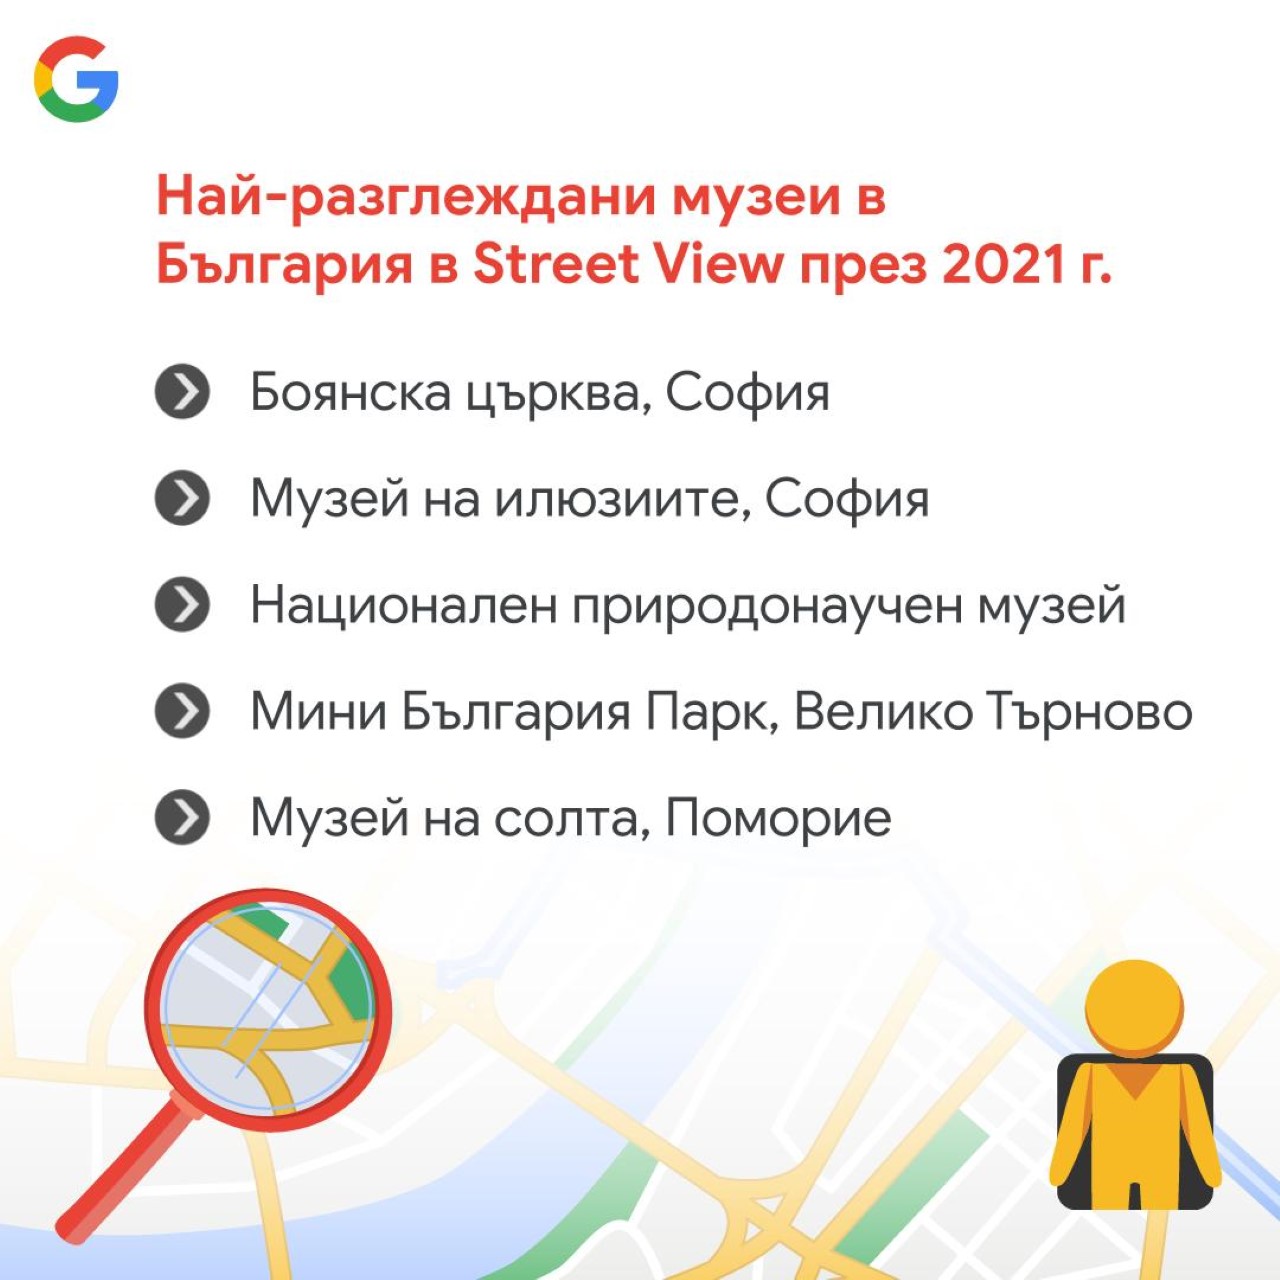 <p>Най-разглежданите български музеи в Street View през 2021 година</p>